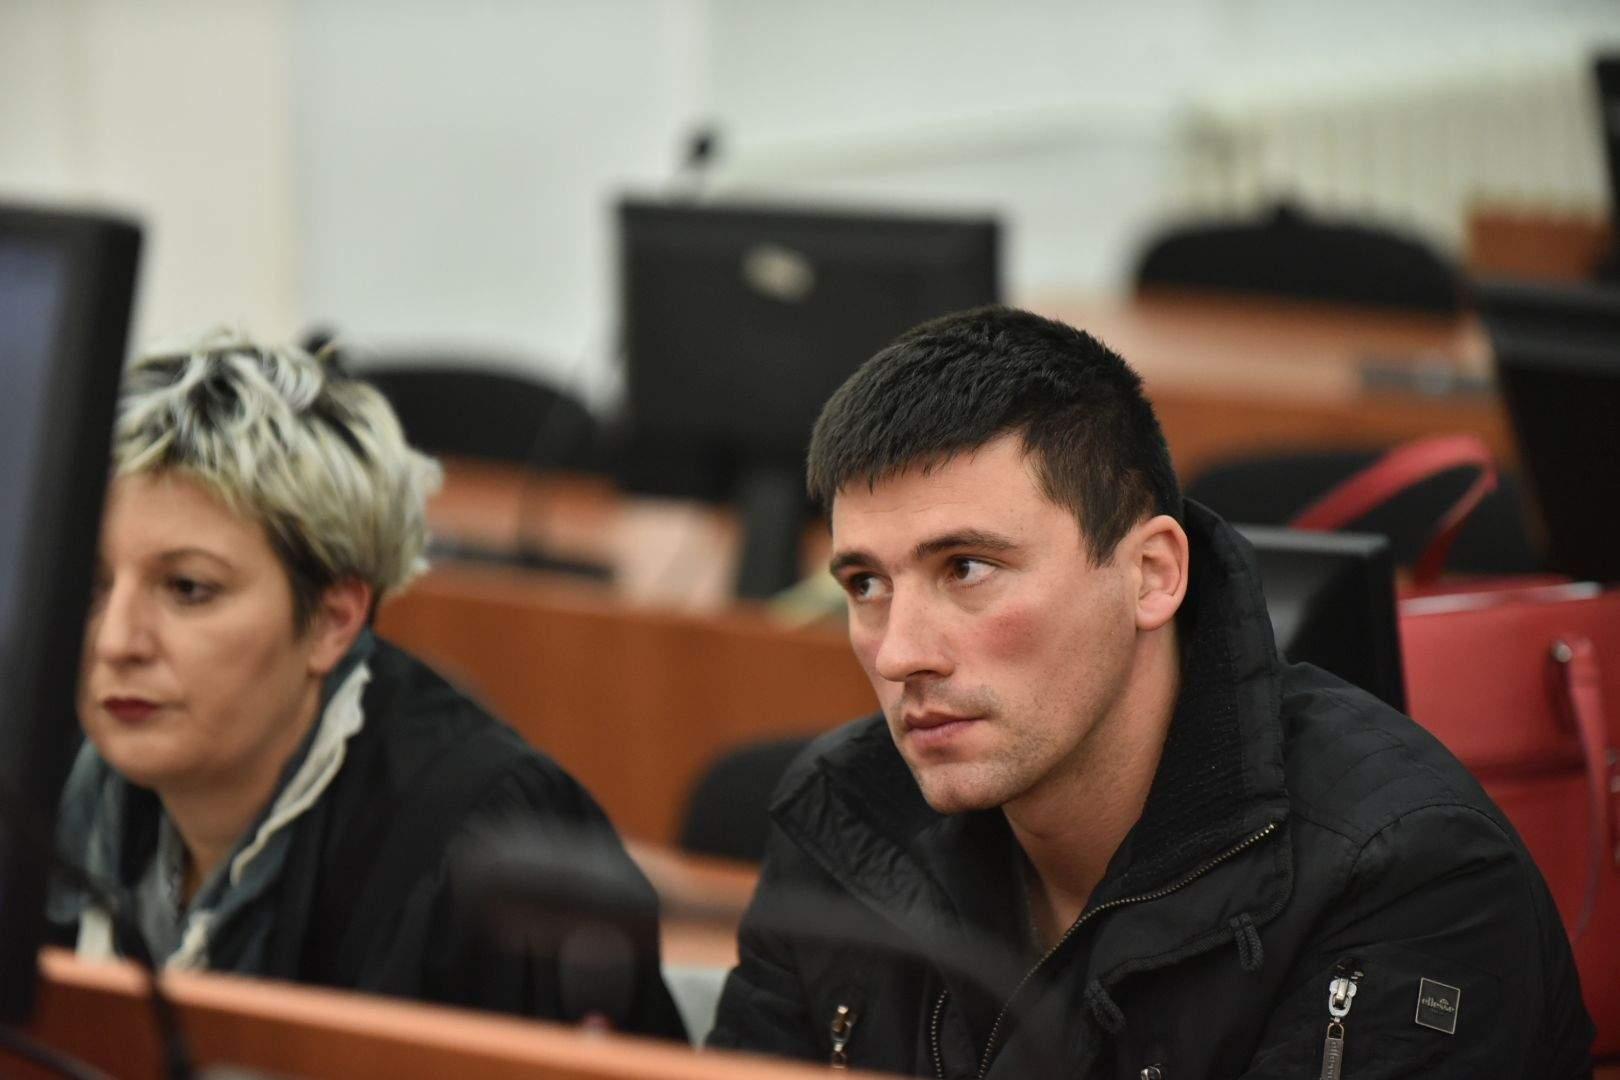 Srećko Trifković ostaje u pritvoru zbog sumnje da je ubio Damira Ostojića